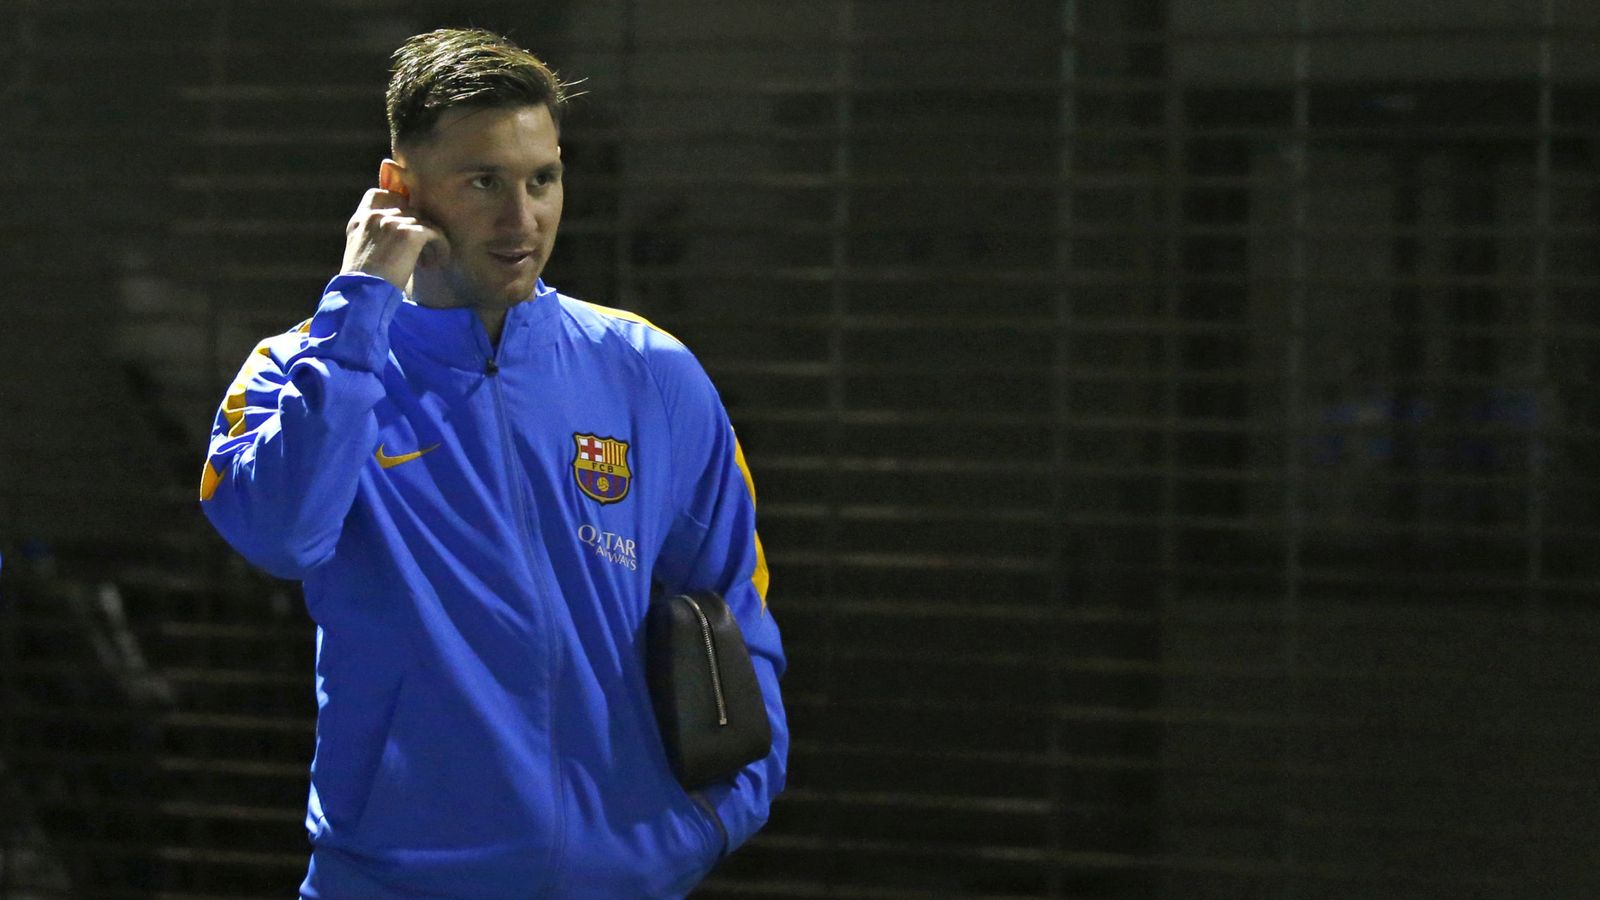 Foto: La Juez archiva la investigación a Messi por los partidos benéficos porque no cobró